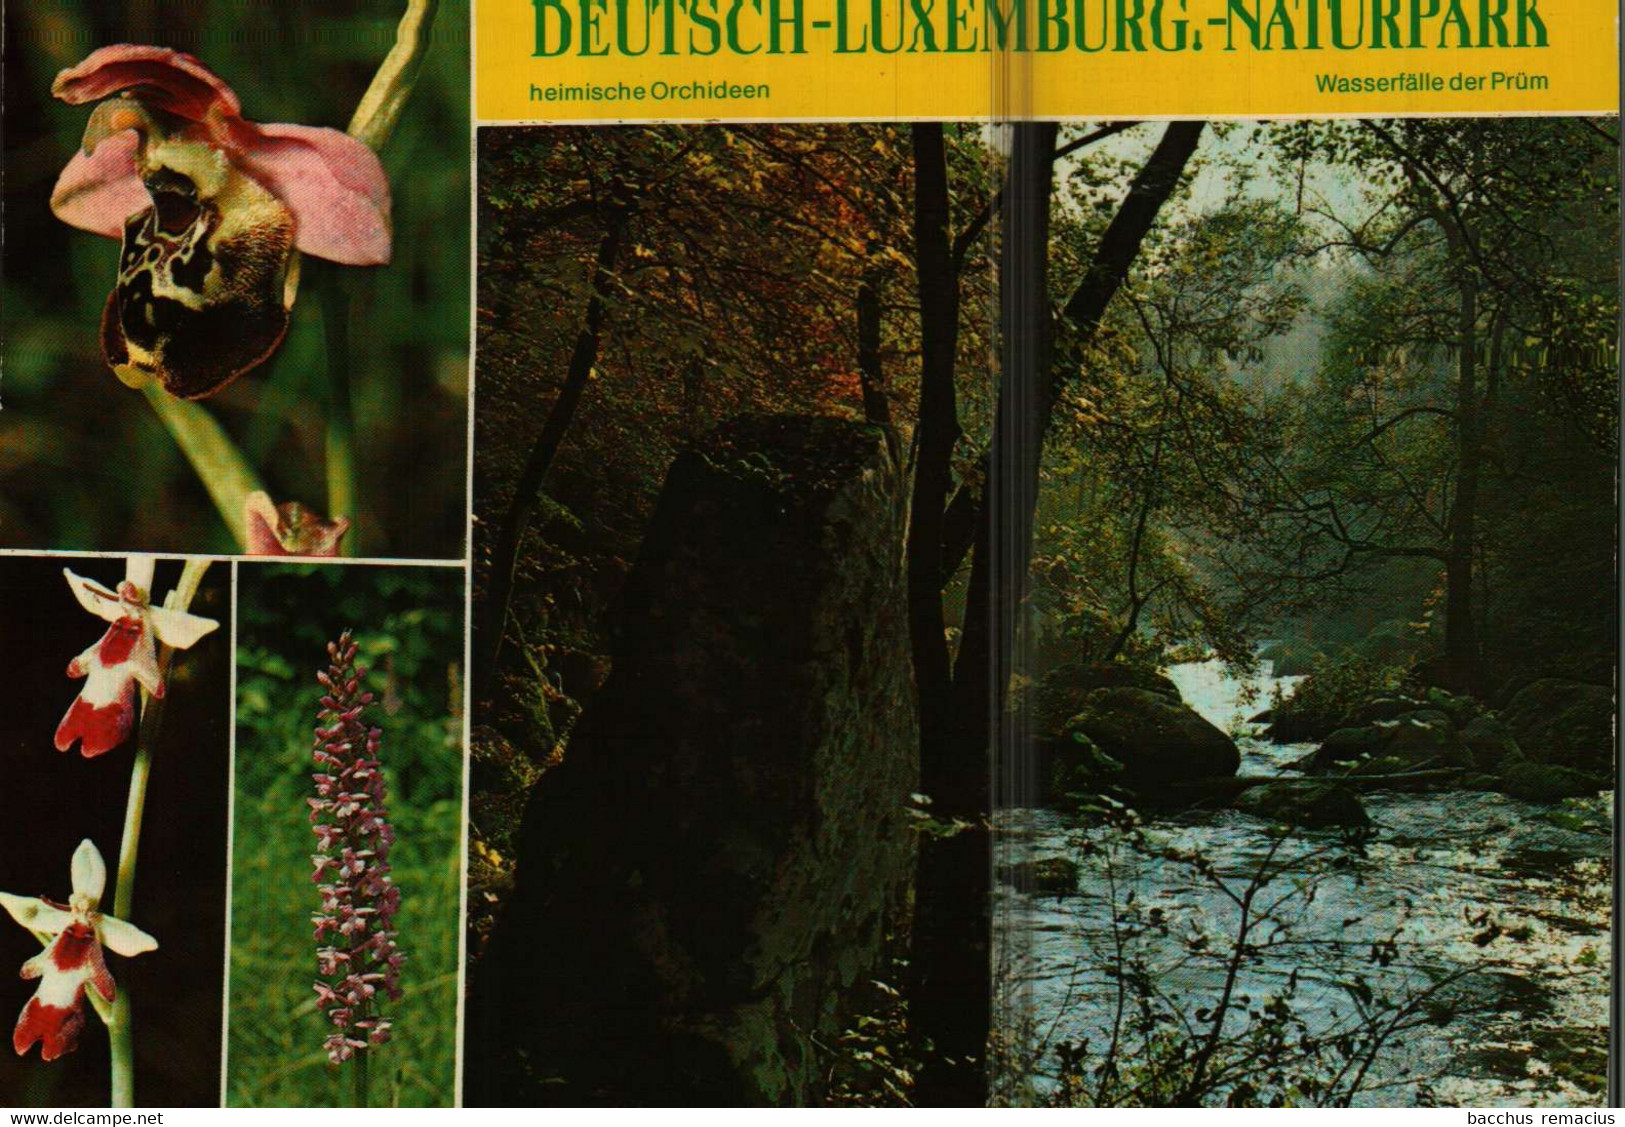 PRÜM/Eifel Deutsch-luxemburgischer Naturpark 1- Heimische Orchideen 2.Wasserfälle Der Prüm - Pruem